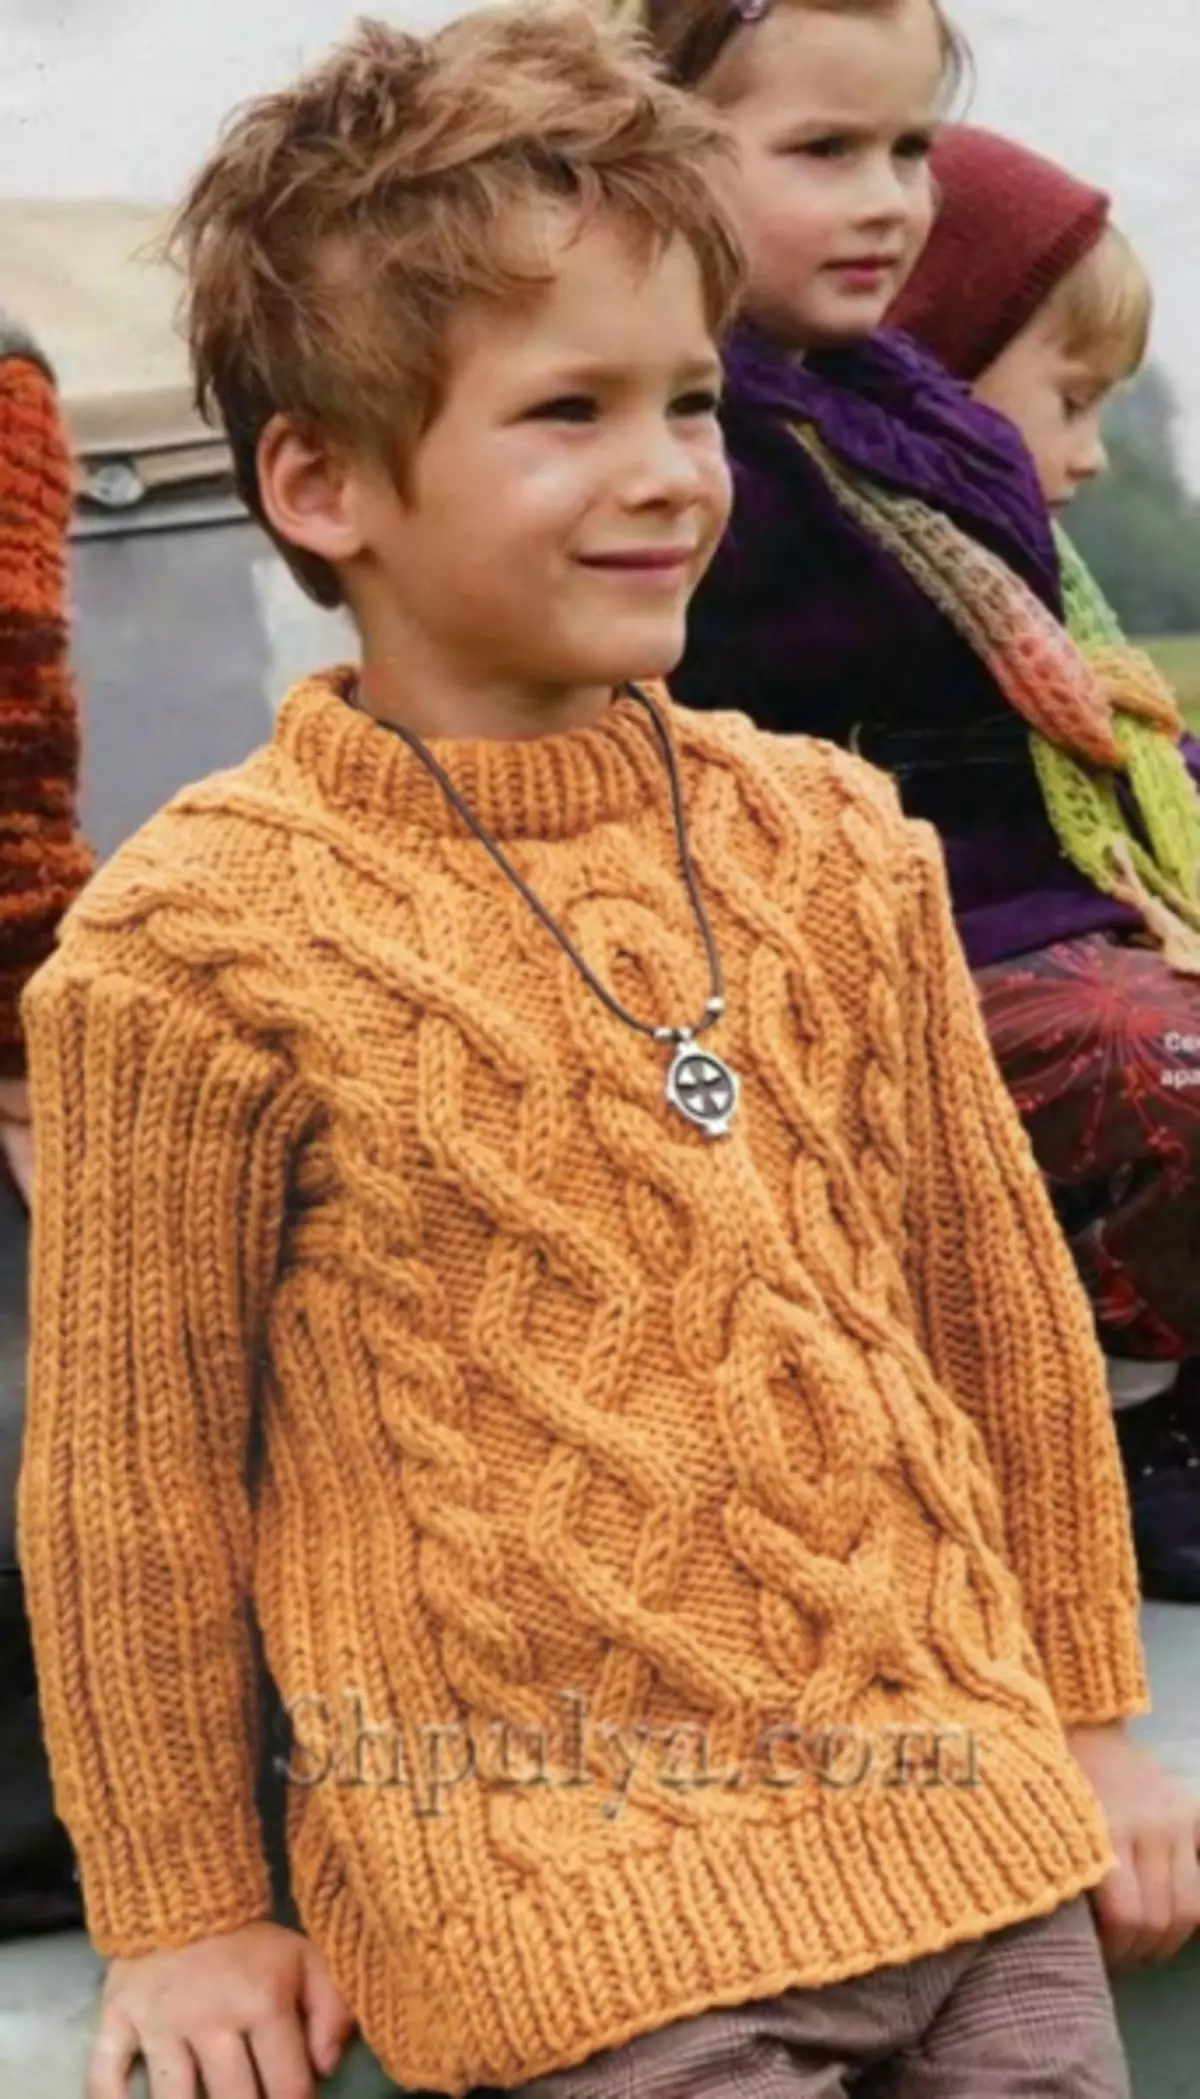 Sweater ji bo kurik bi pêlavên kincê: Rella ji bo pitikê 1-3 salî bi wêne û vîdyoyan